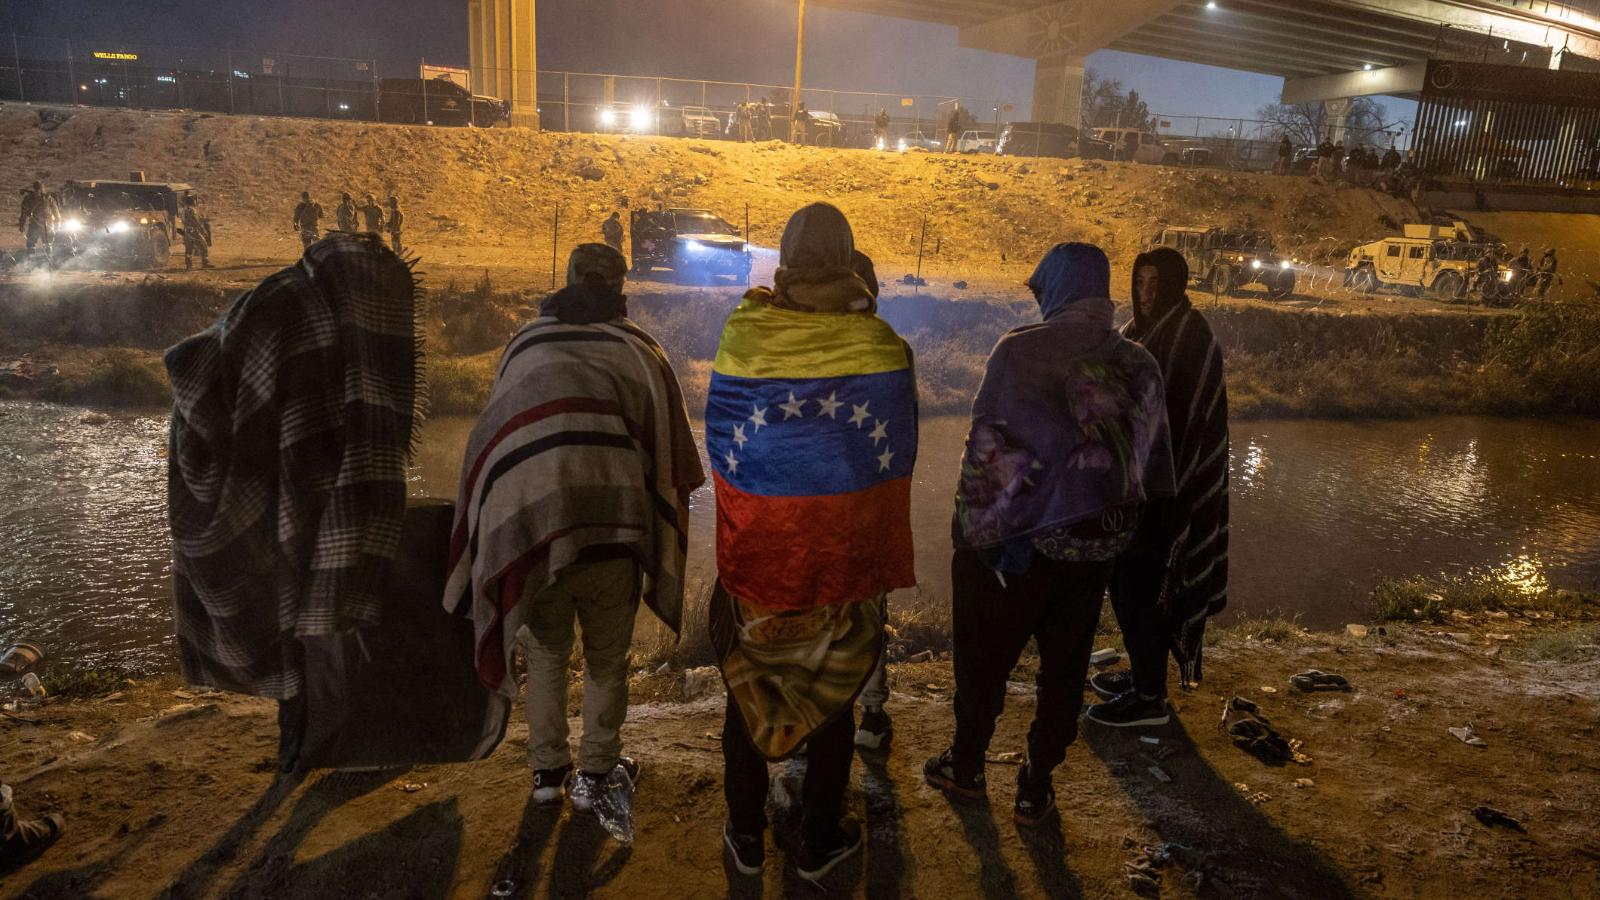 EEUU repatriará a venezolanos que crucen la frontera de manera irregular sin base legal para quedarse